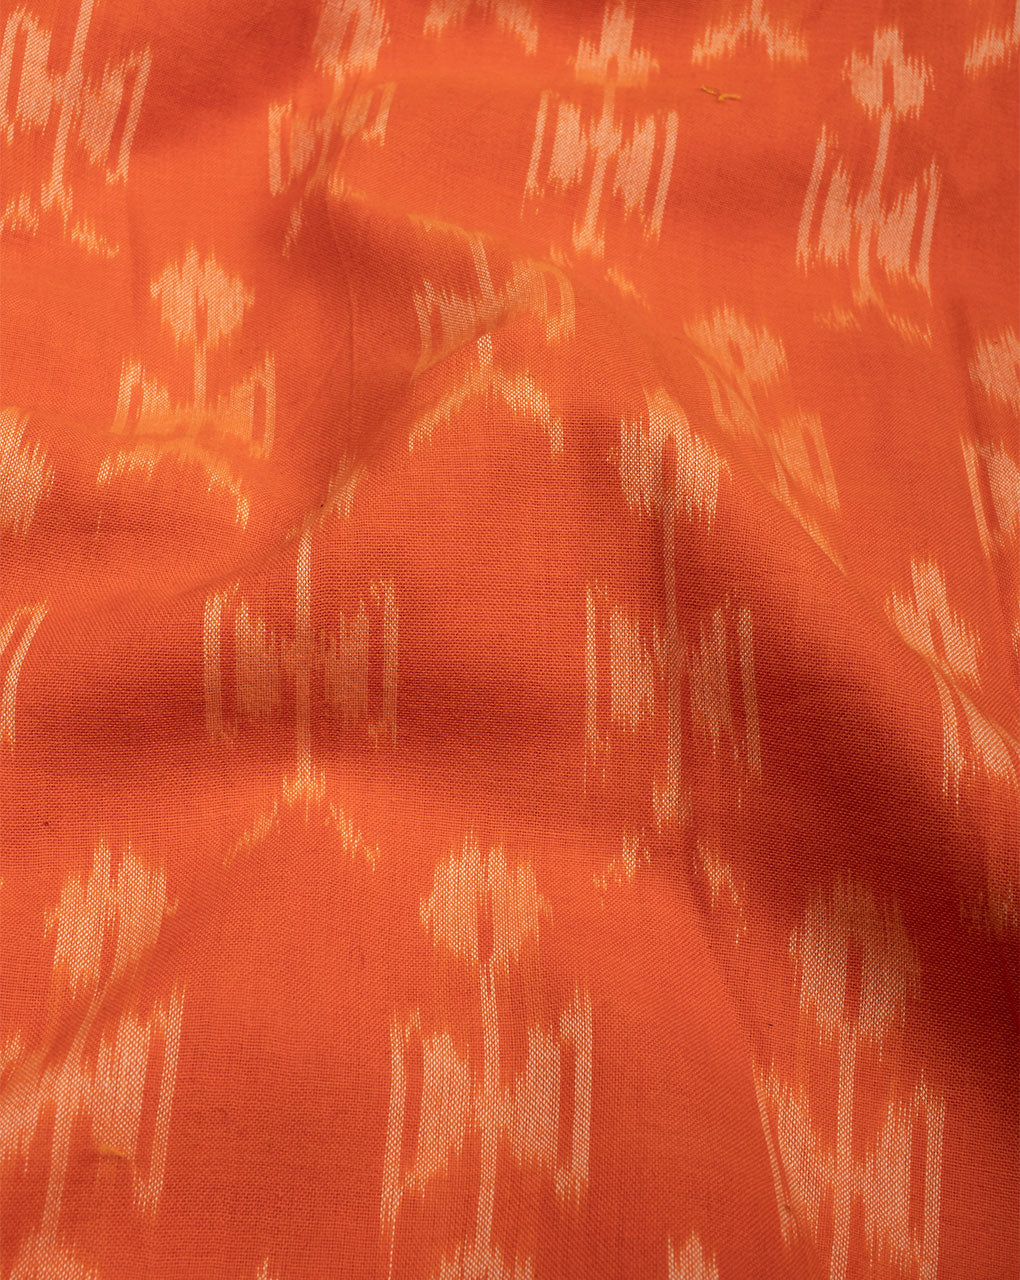 Orange & Off-White Warli Pattern Woven Mercerized Ikat Cotton Fabric - Fabriclore.com